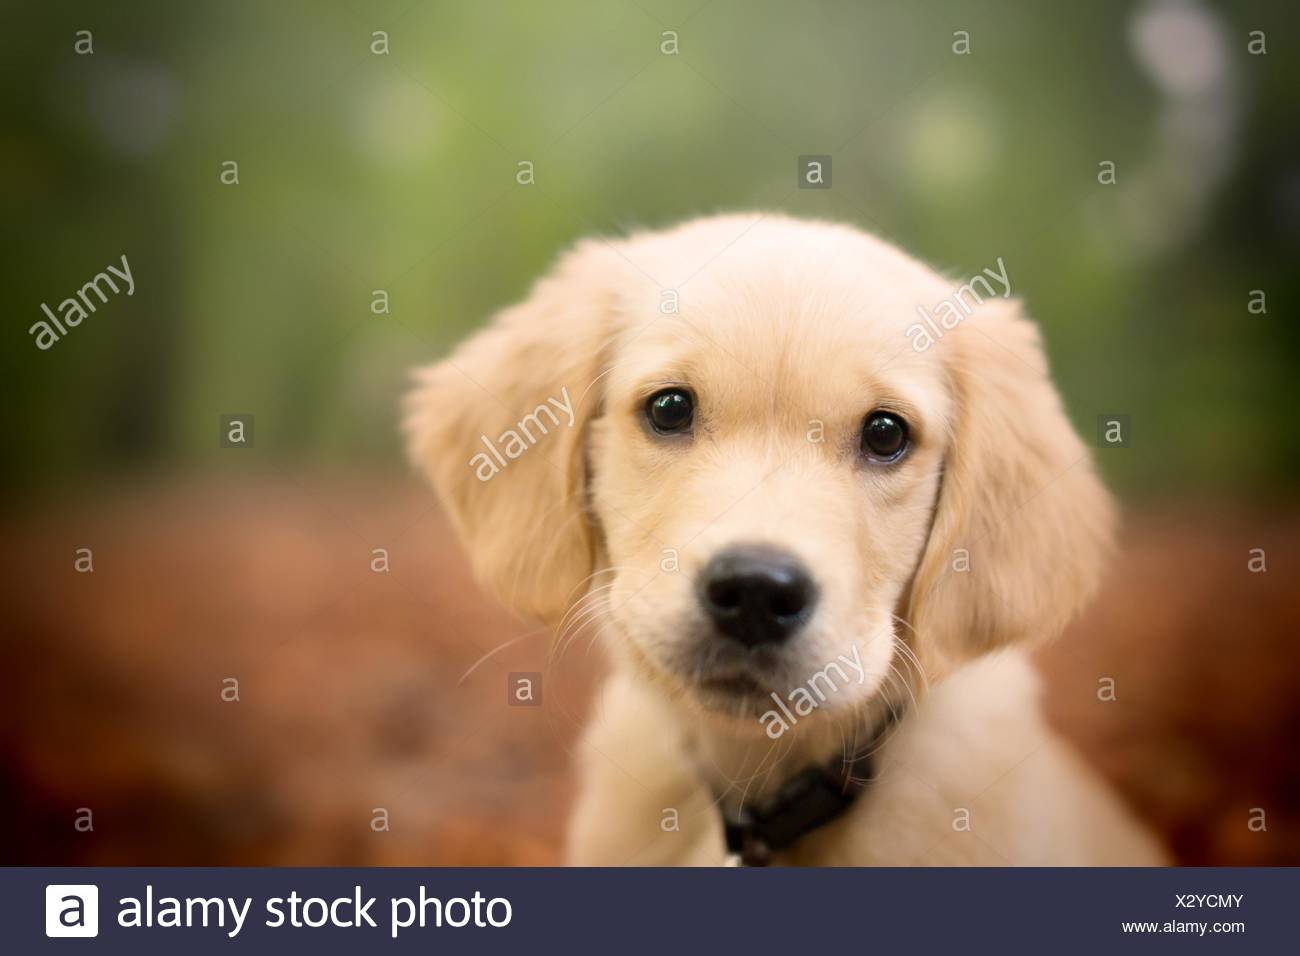 golden retriever puppy eyes